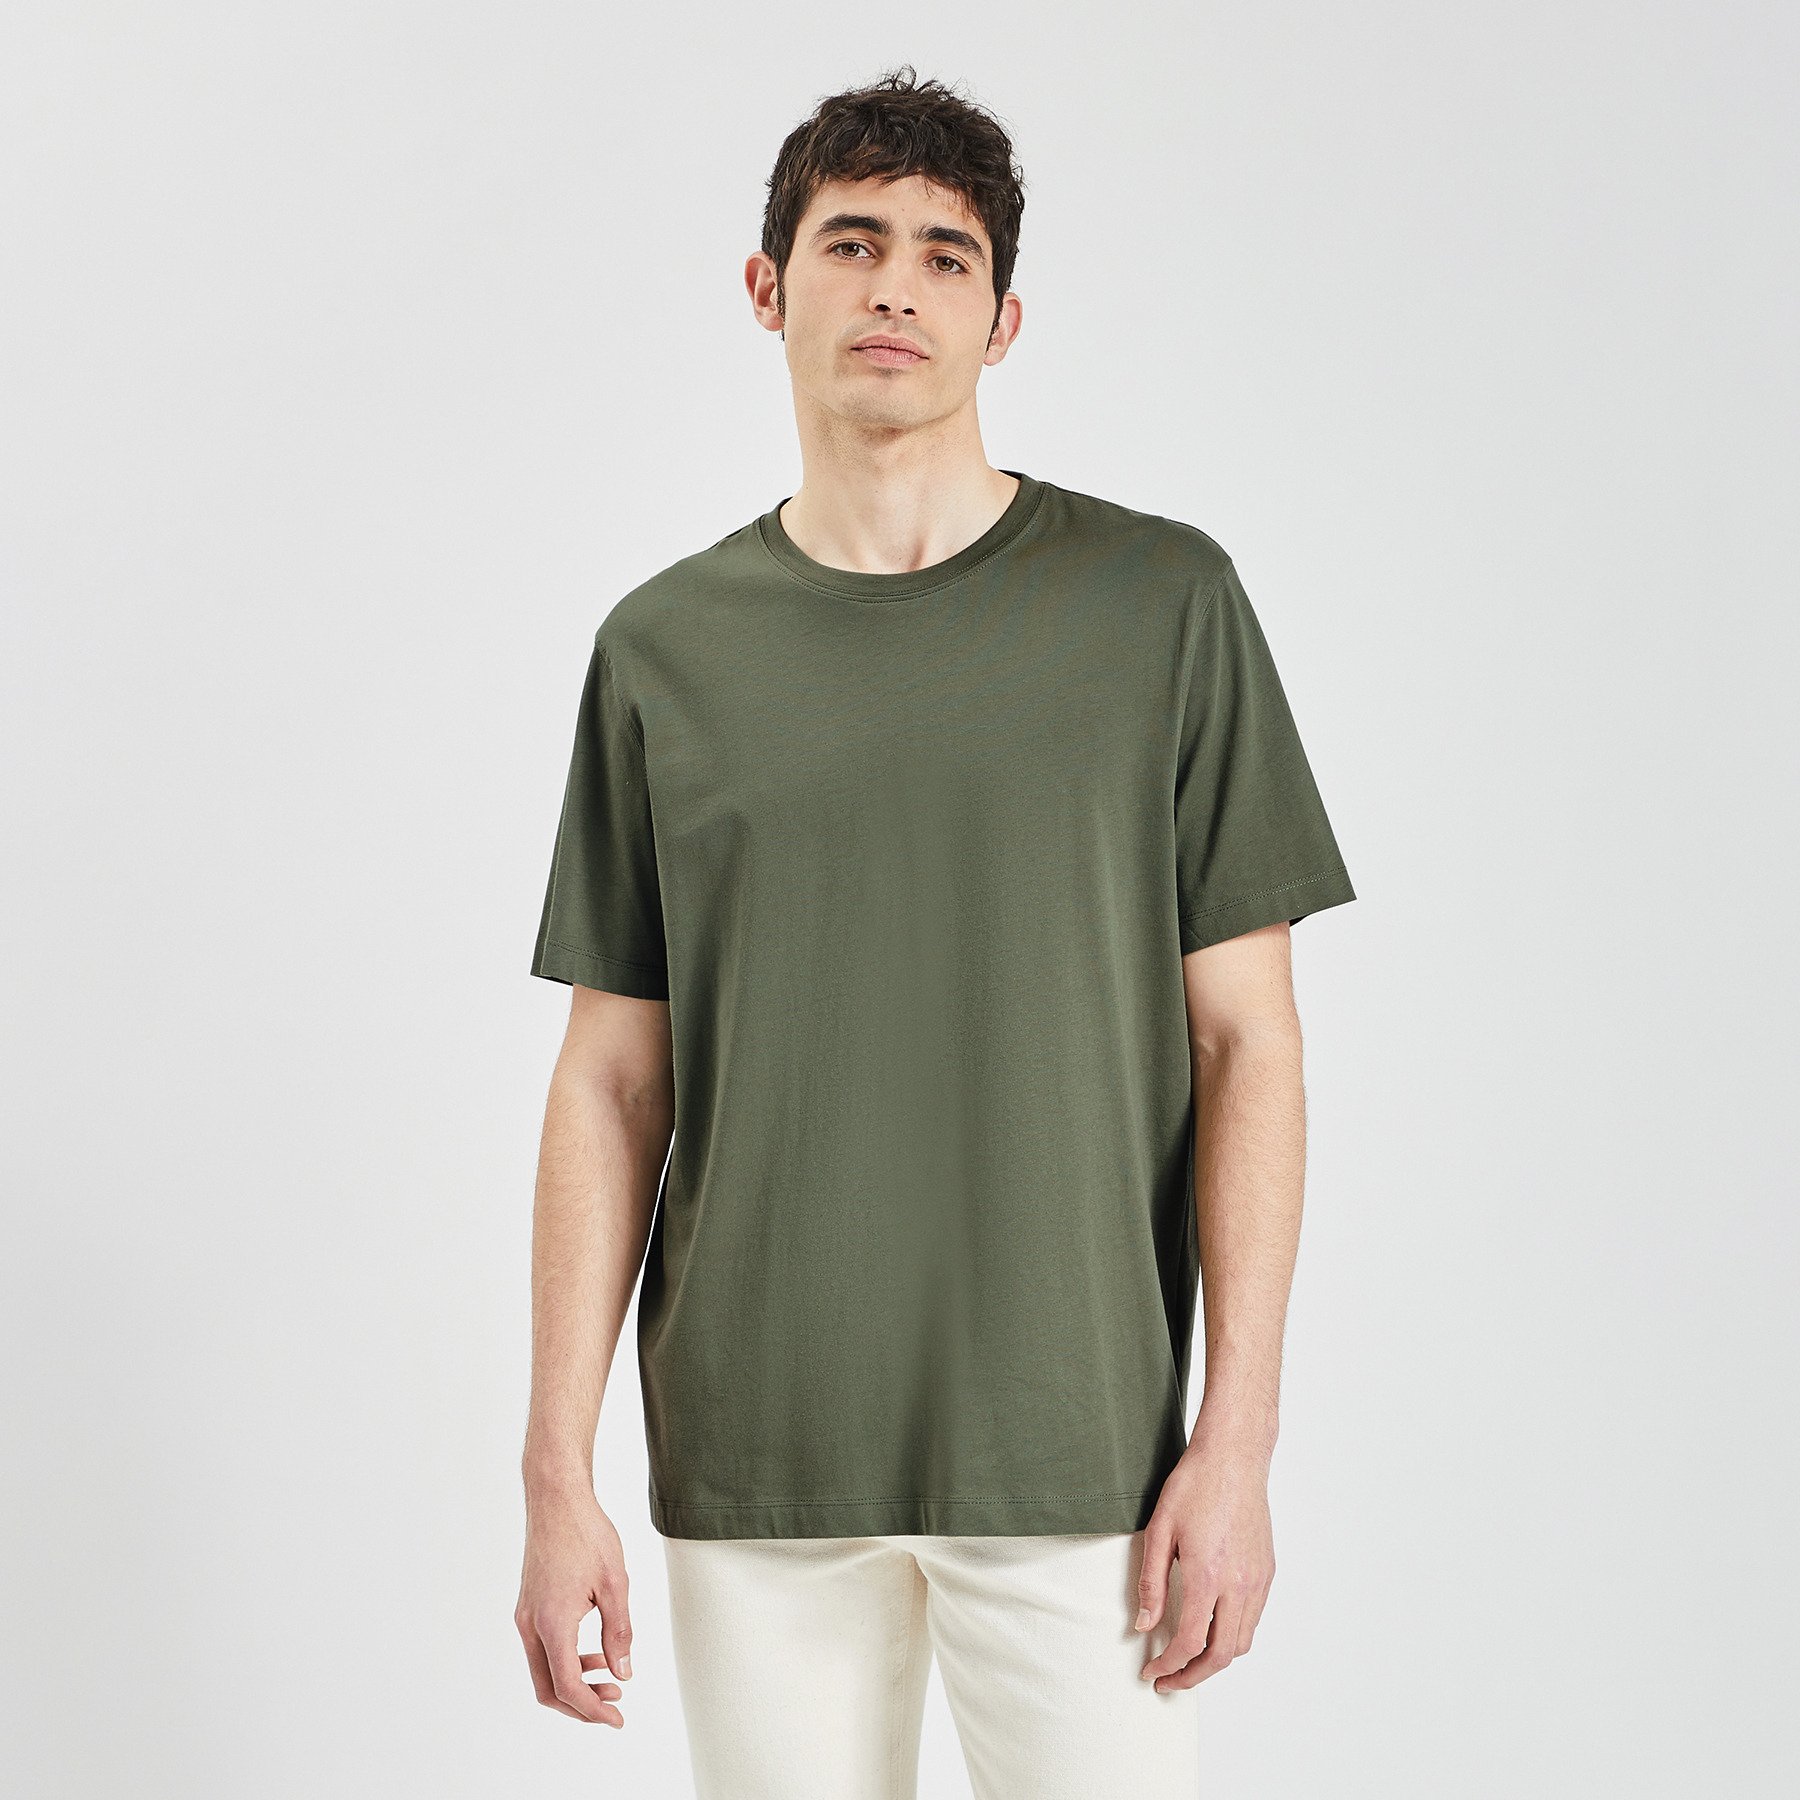 Tee shirt "le parfait by JULES" Vert kaki L 100% Coton Homme Jules